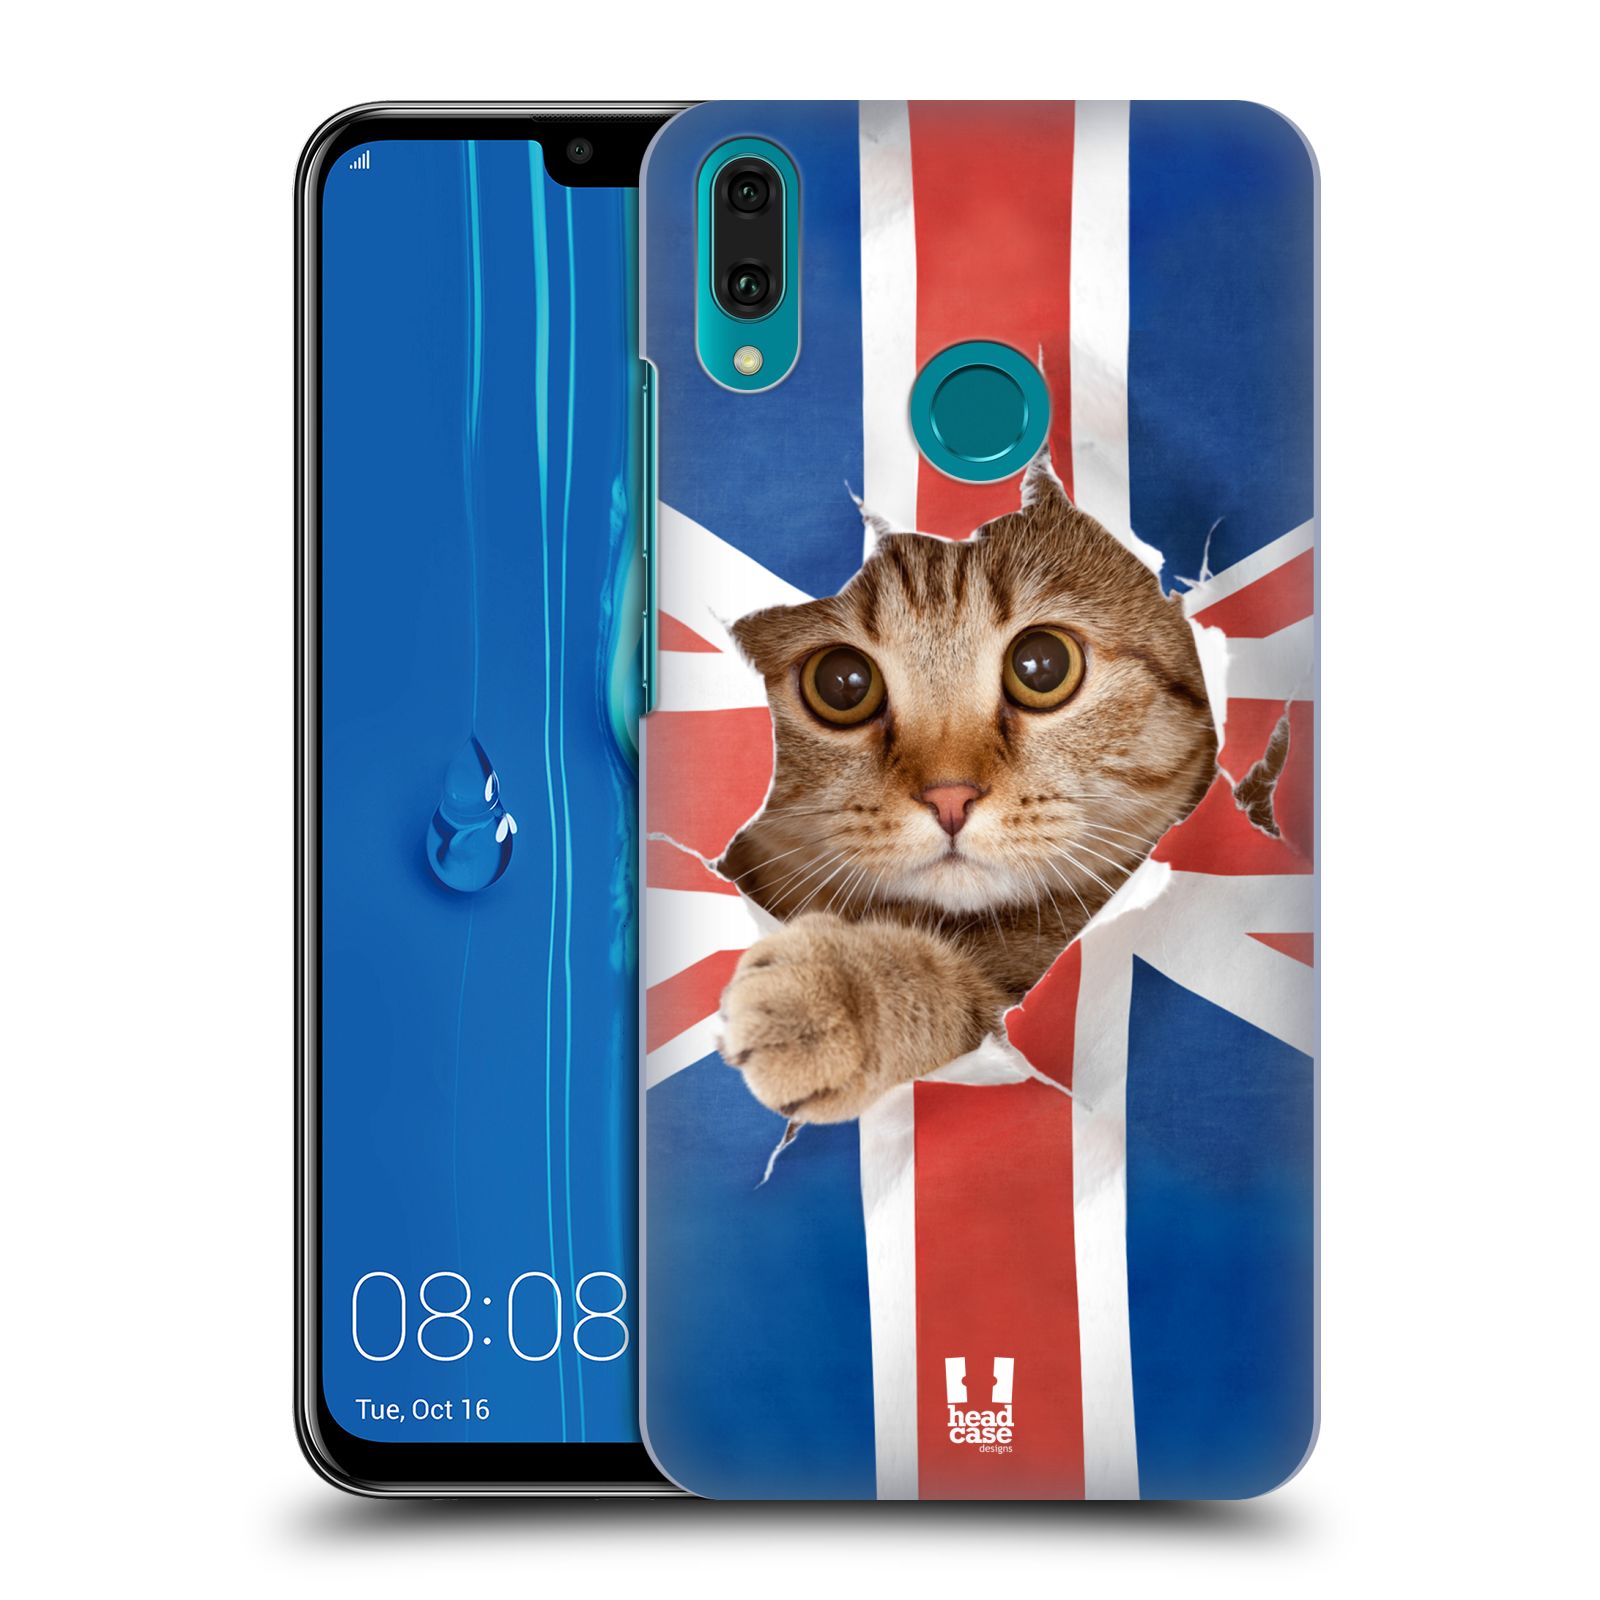 Pouzdro na mobil Huawei Y9 2019 - HEAD CASE - vzor Legrační zvířátka kočička a Velká Británie vlajka